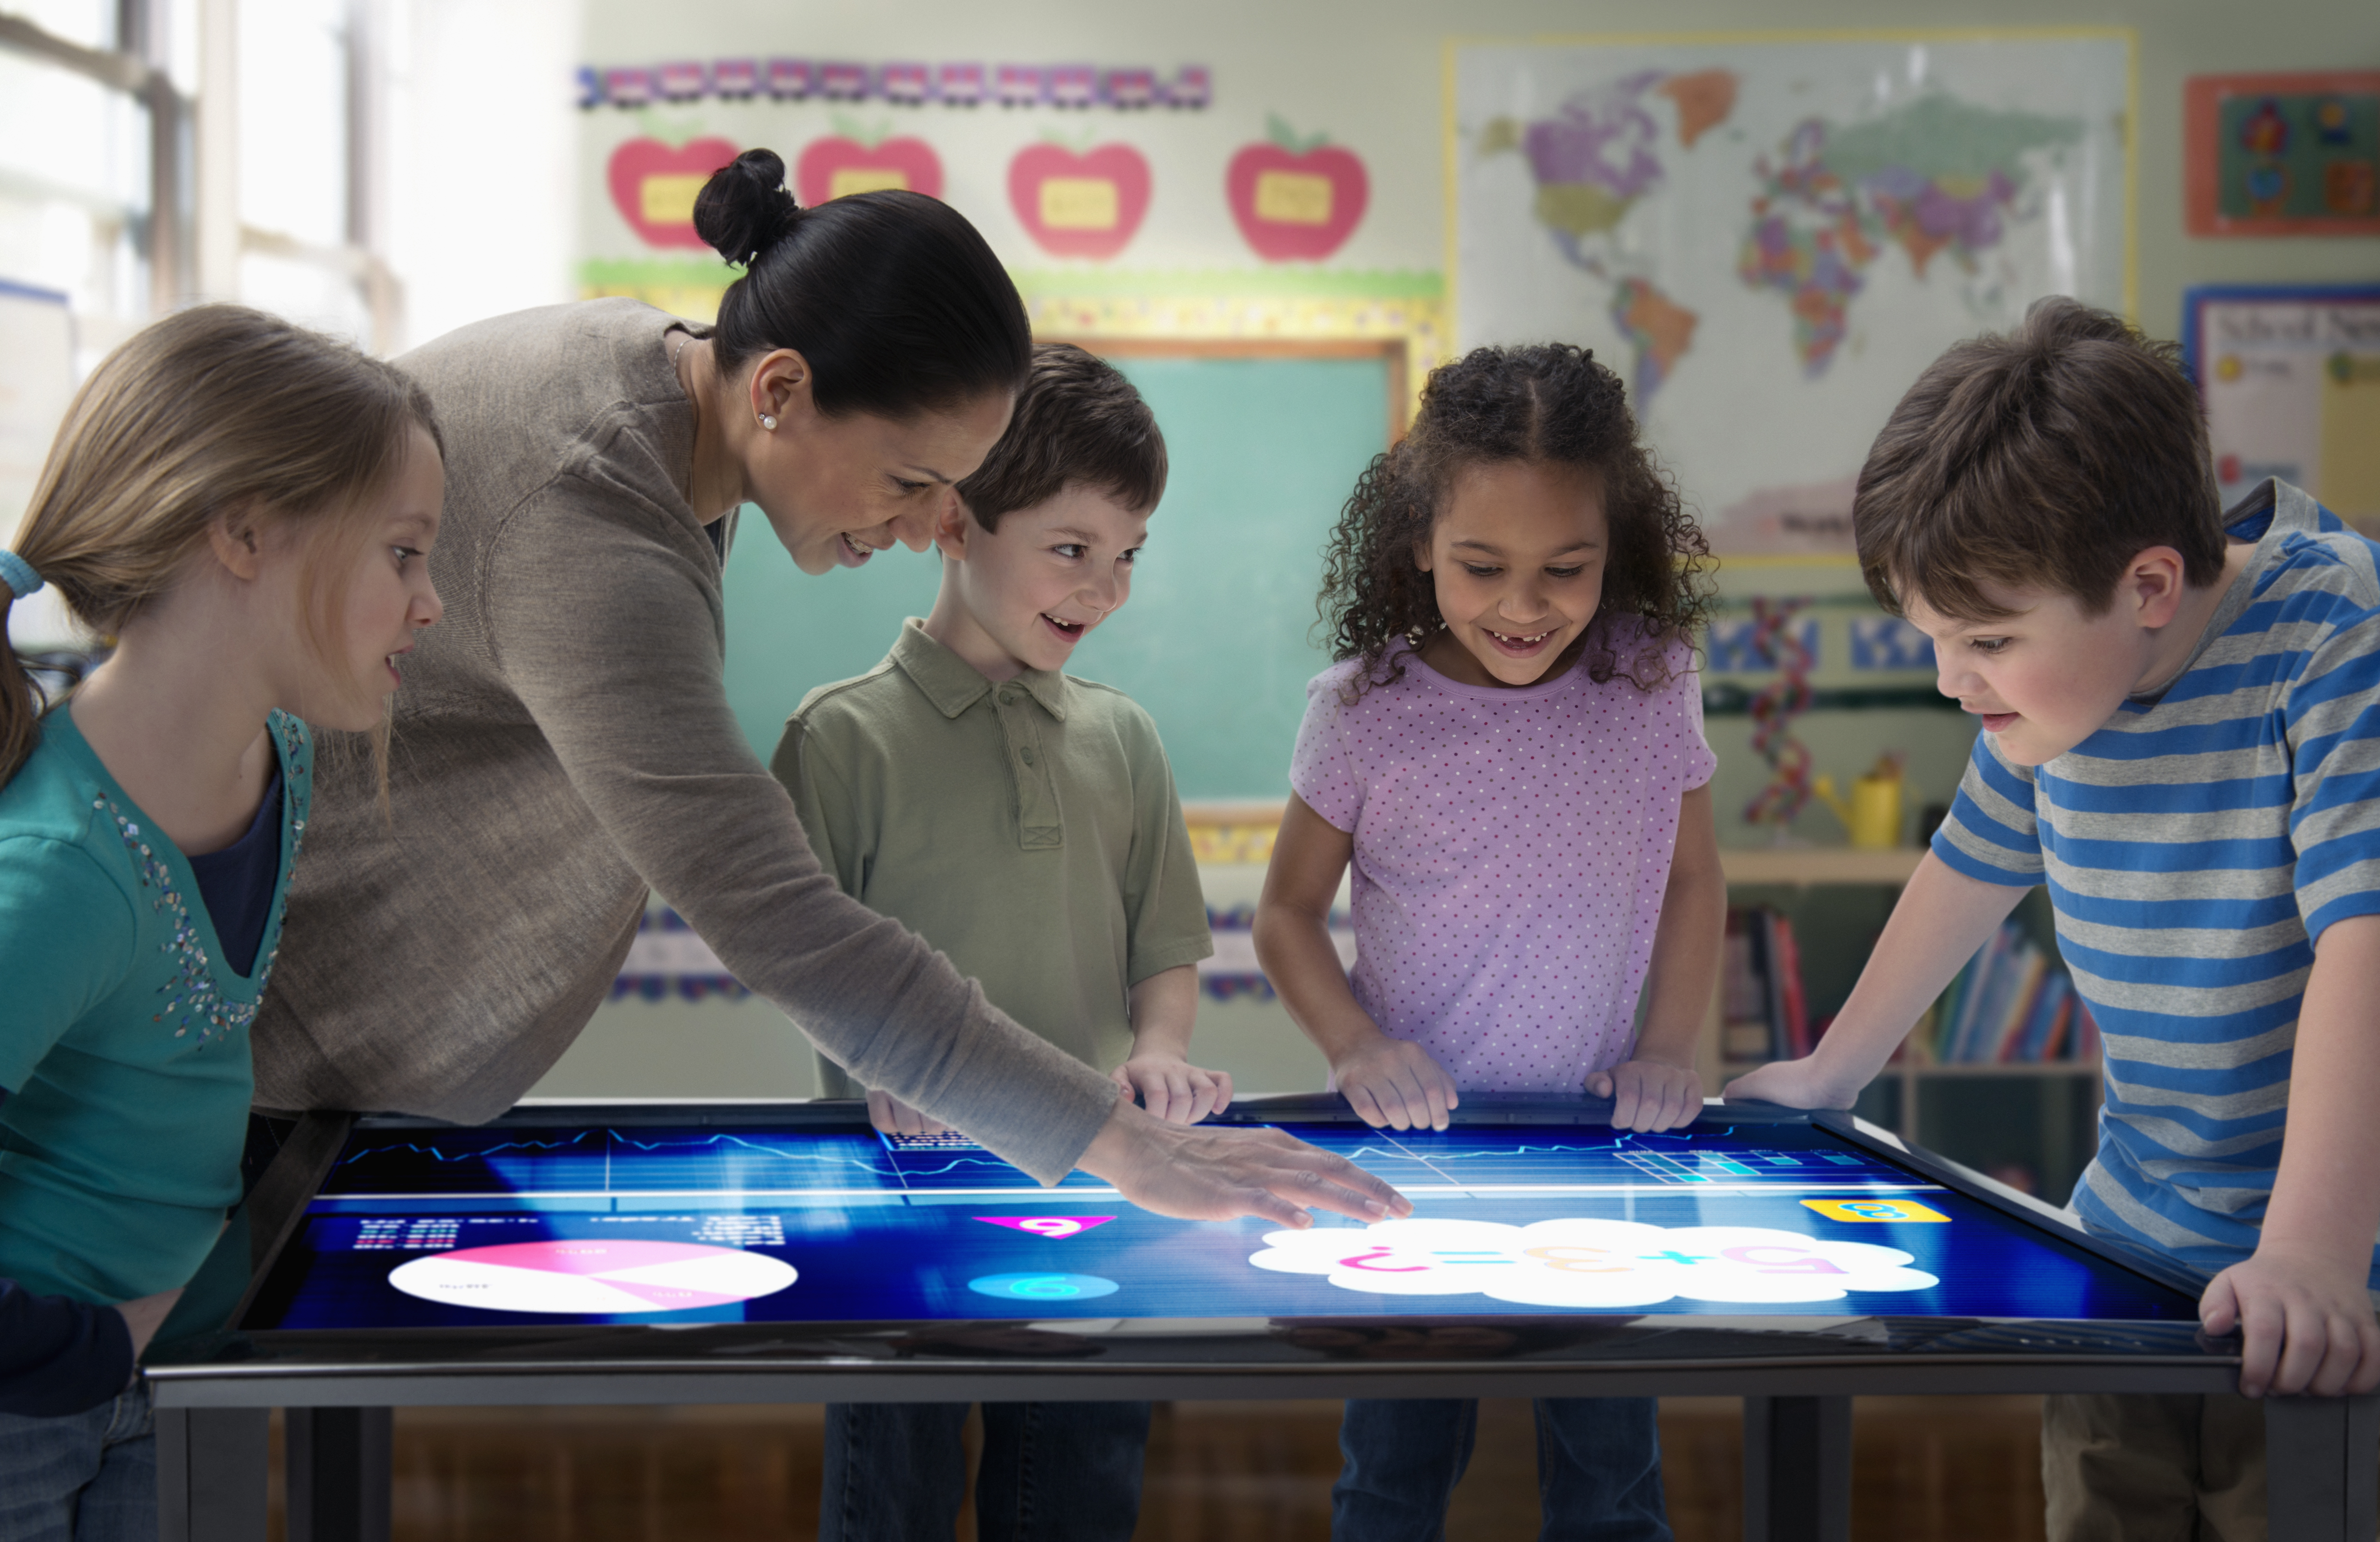 Образовательное развлечение. Интерактивный стол для школы. Ученик будущего. Интерактивный для детей. Интерактивный стол для дошкольников.